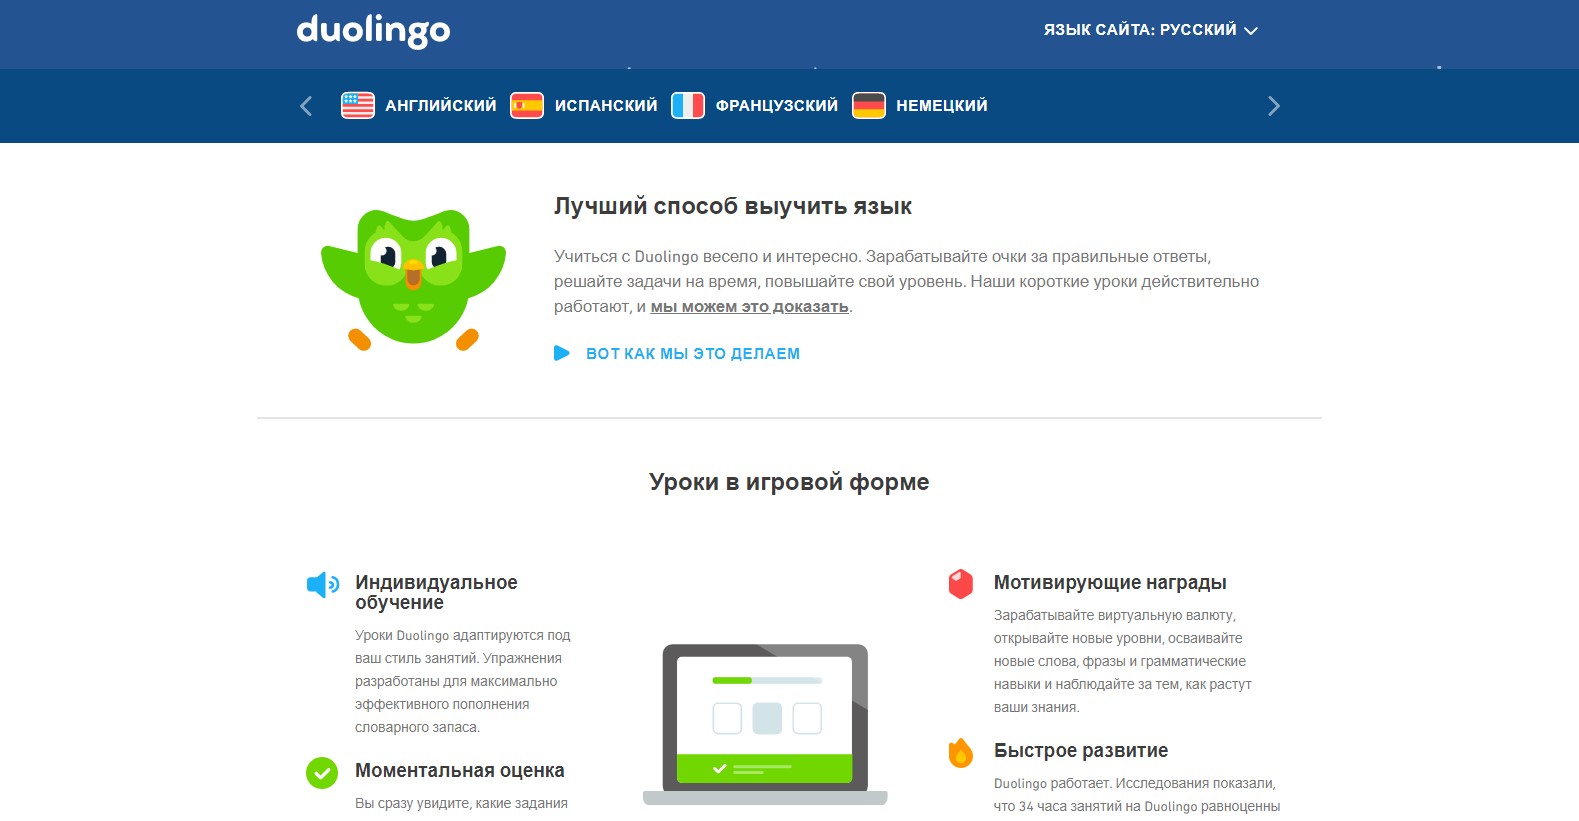 Изучение языков через платформу Duolingo